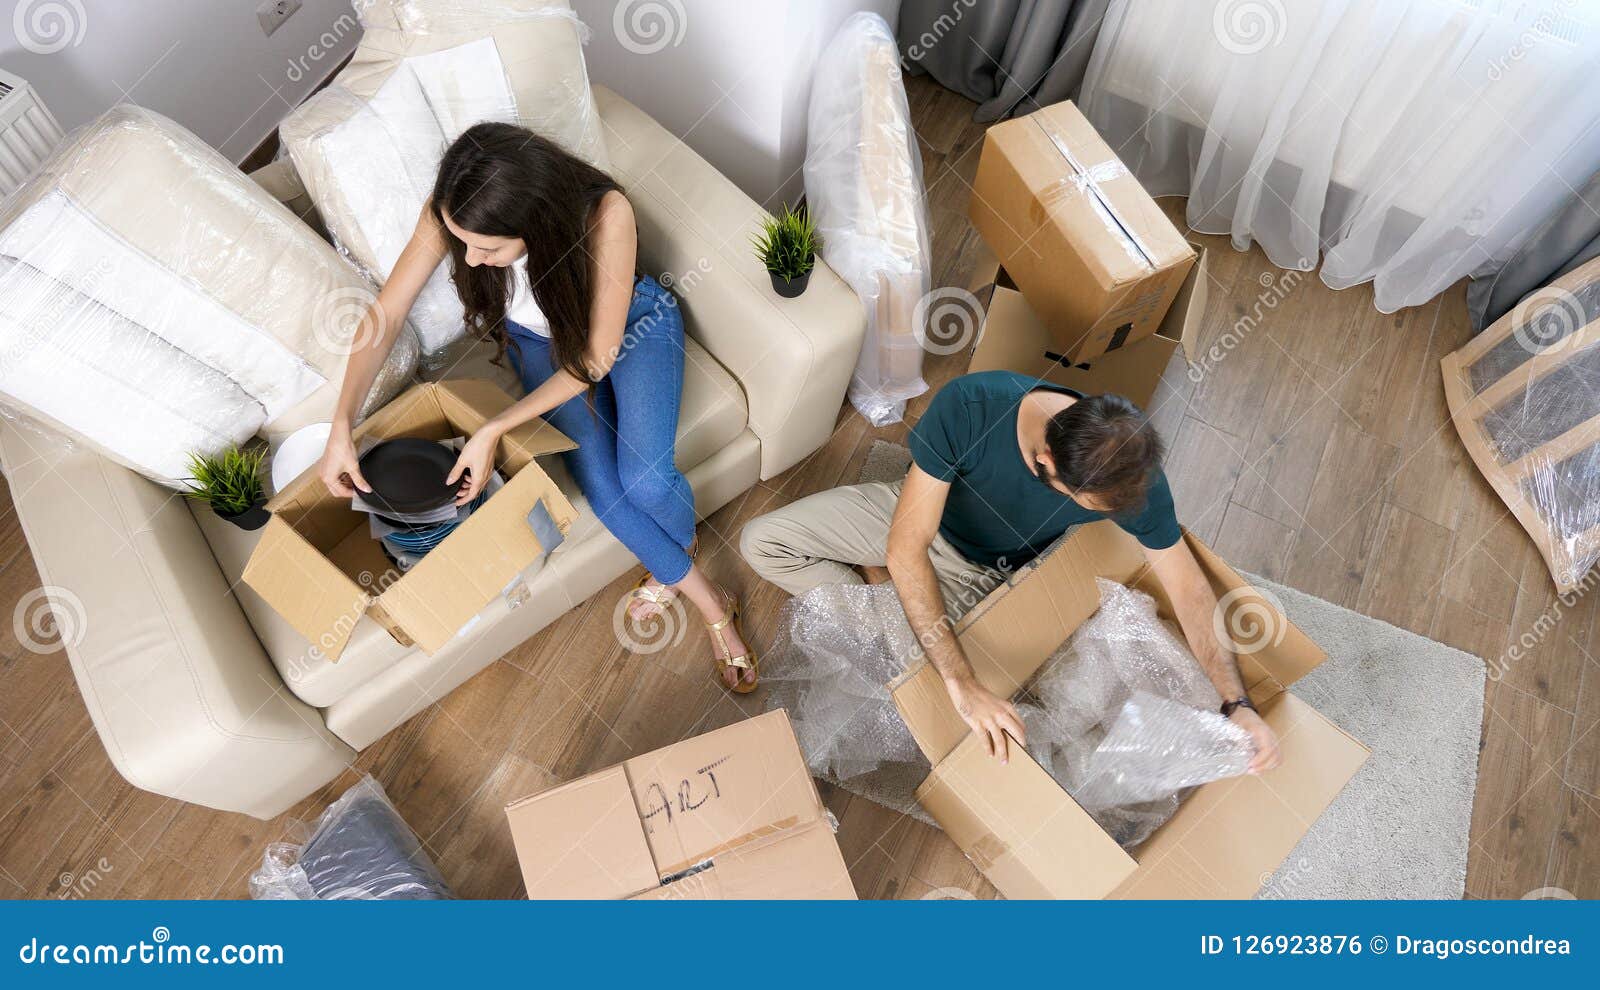 Как переехать к парню. Заселение в квартиру. Пара переезжает. Игра распаковка вещей в квартире.